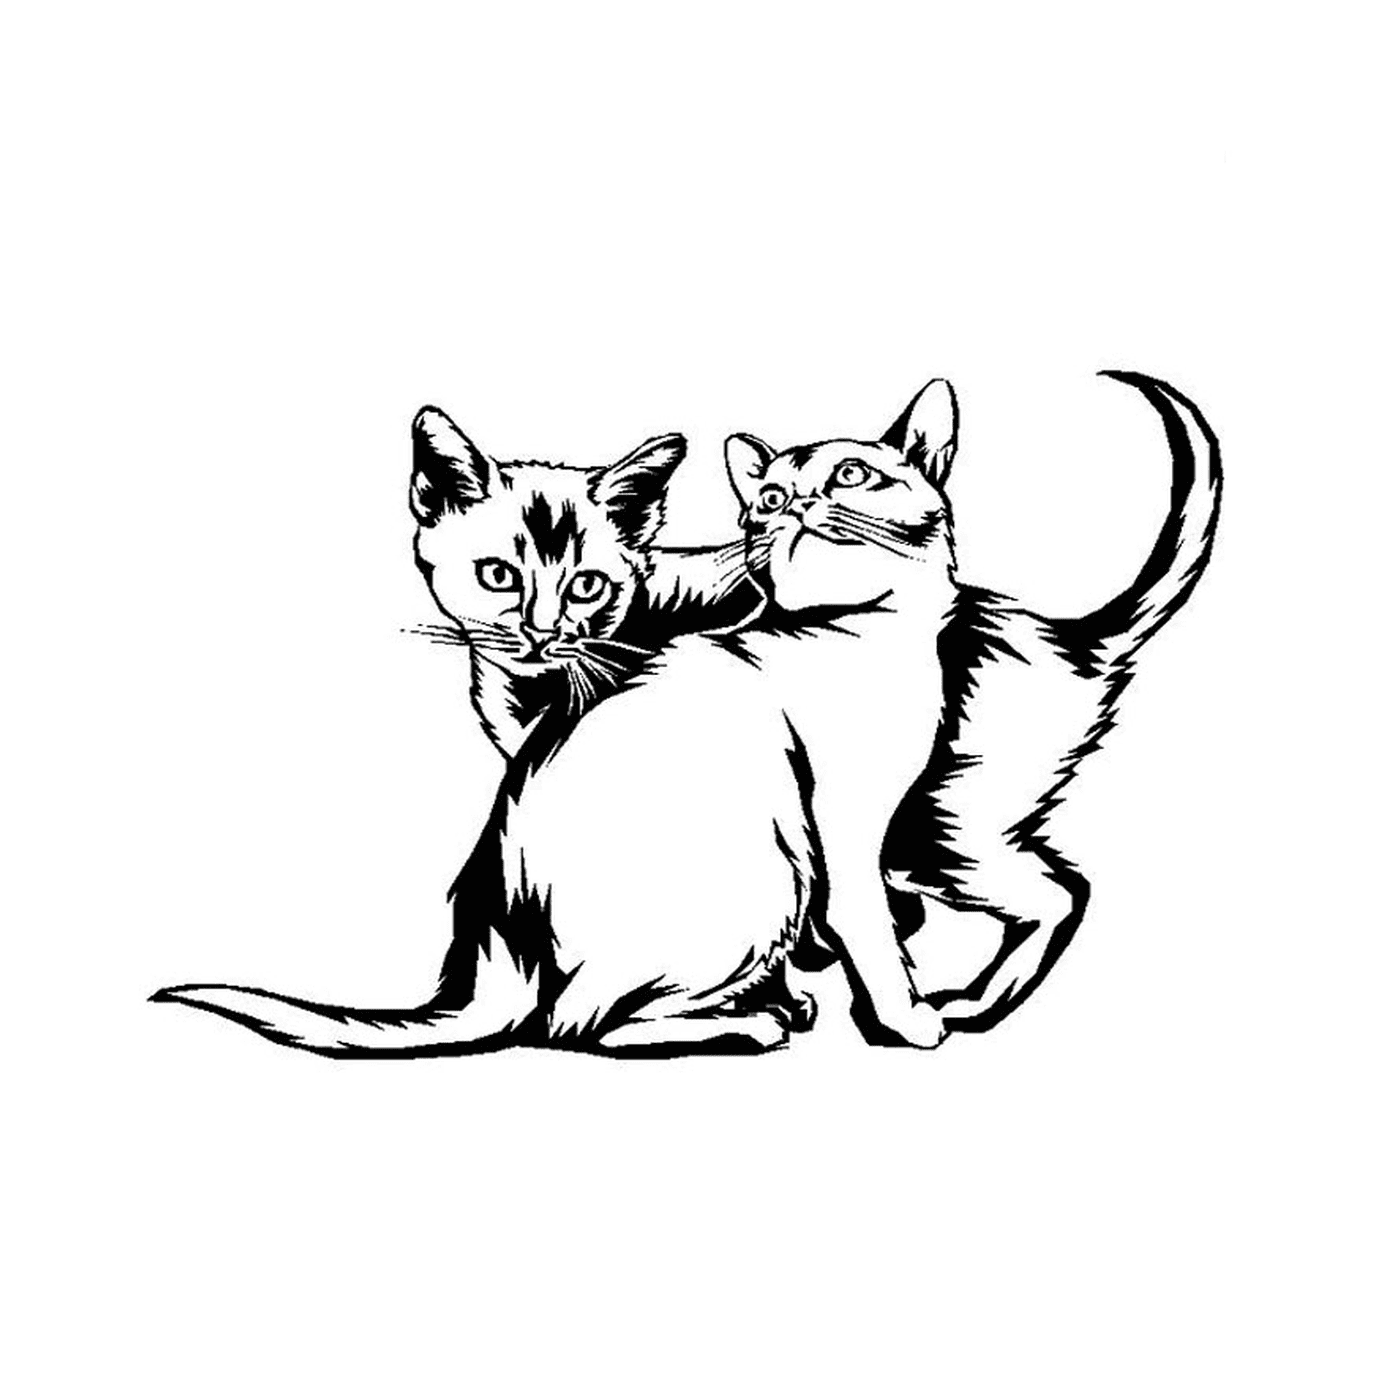  Dos gatitos juegan juntos 